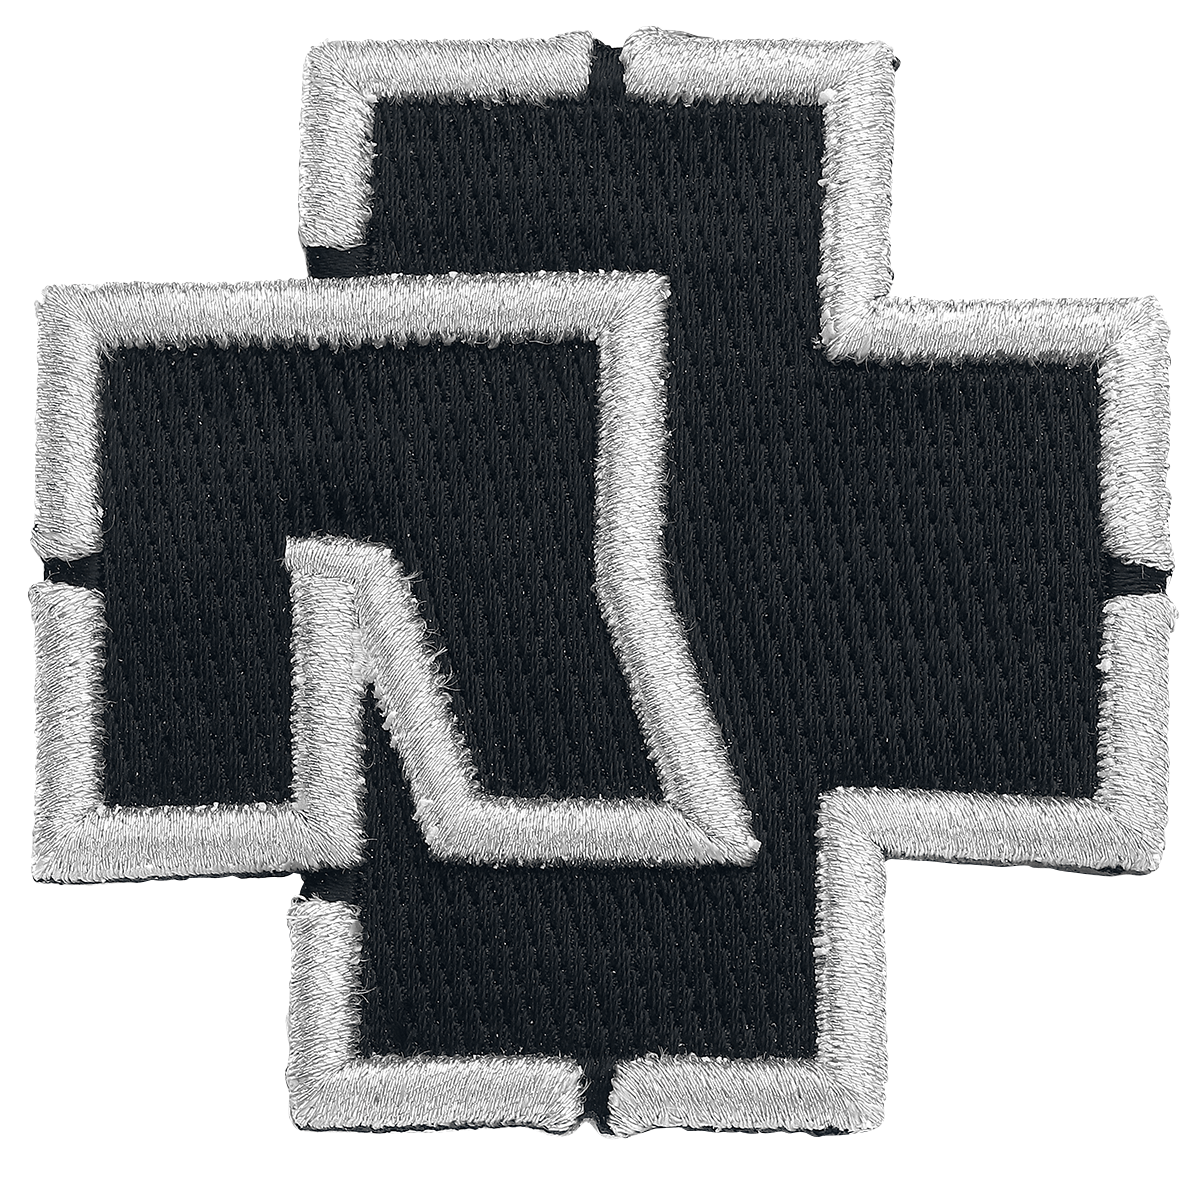 Rammstein - Rammstein Logo - Patch - schwarz